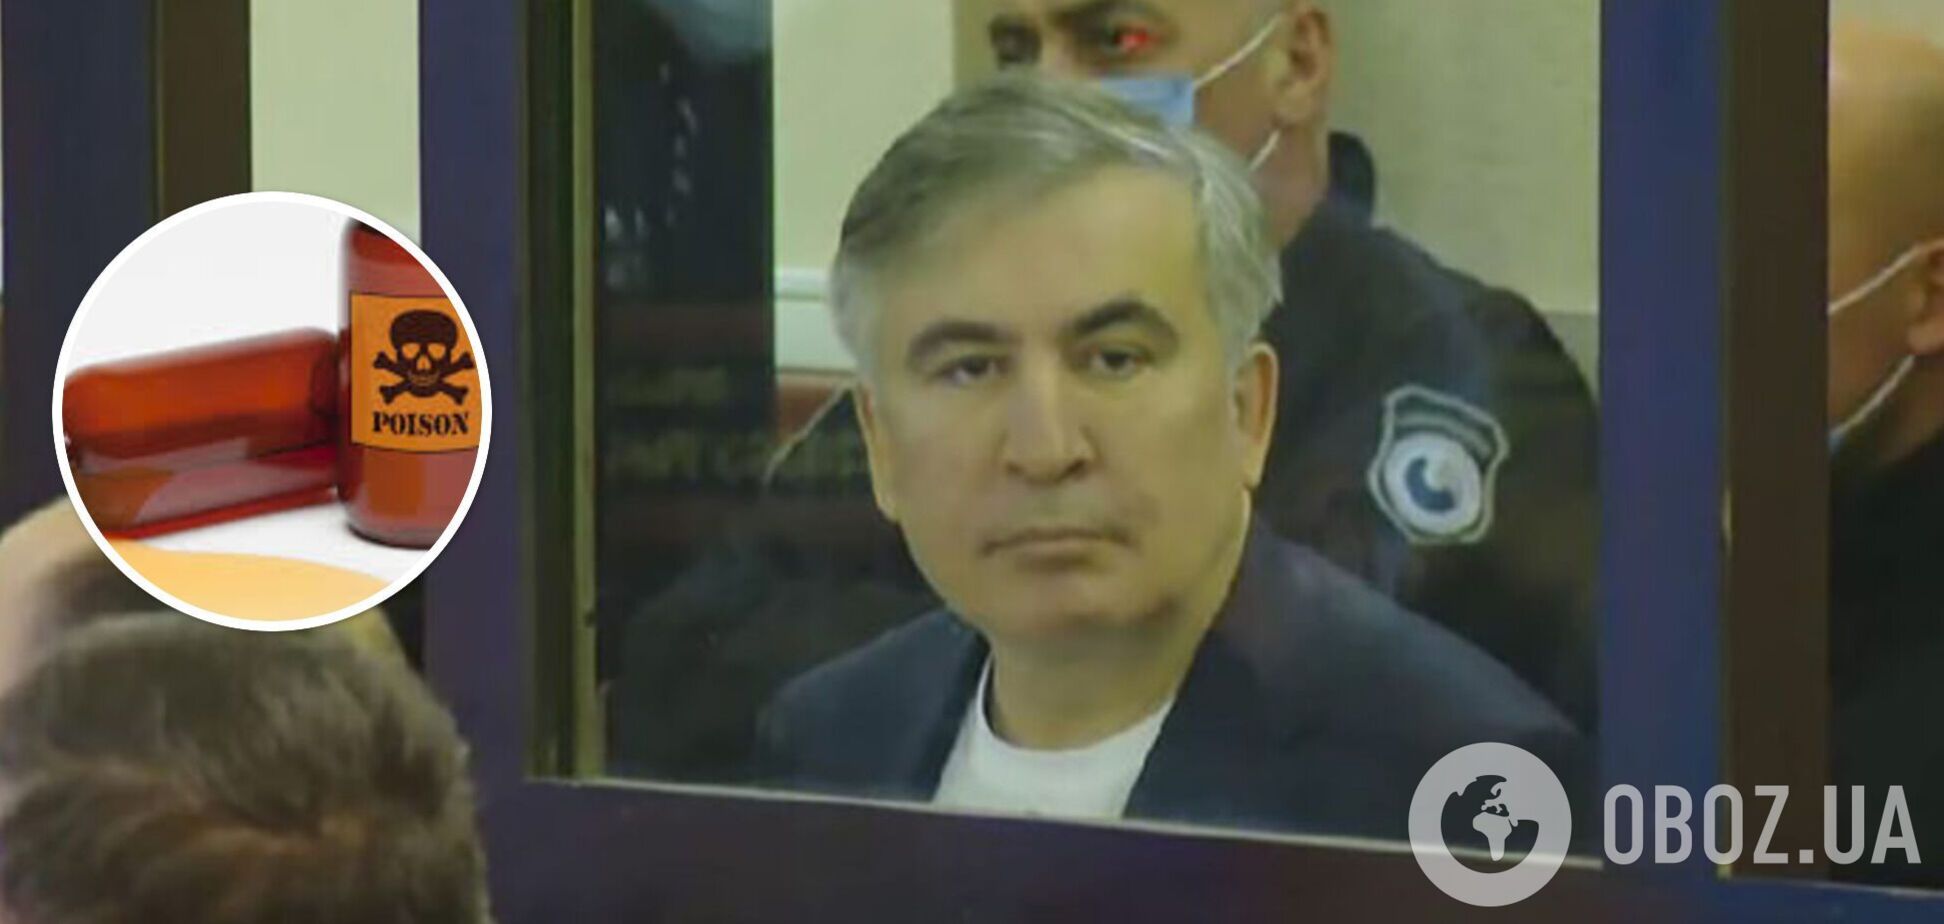 Адвокат Саакашвили раскрыл данные токсикологической экспертизы: в организме экс-президента Грузии обнаружен яд